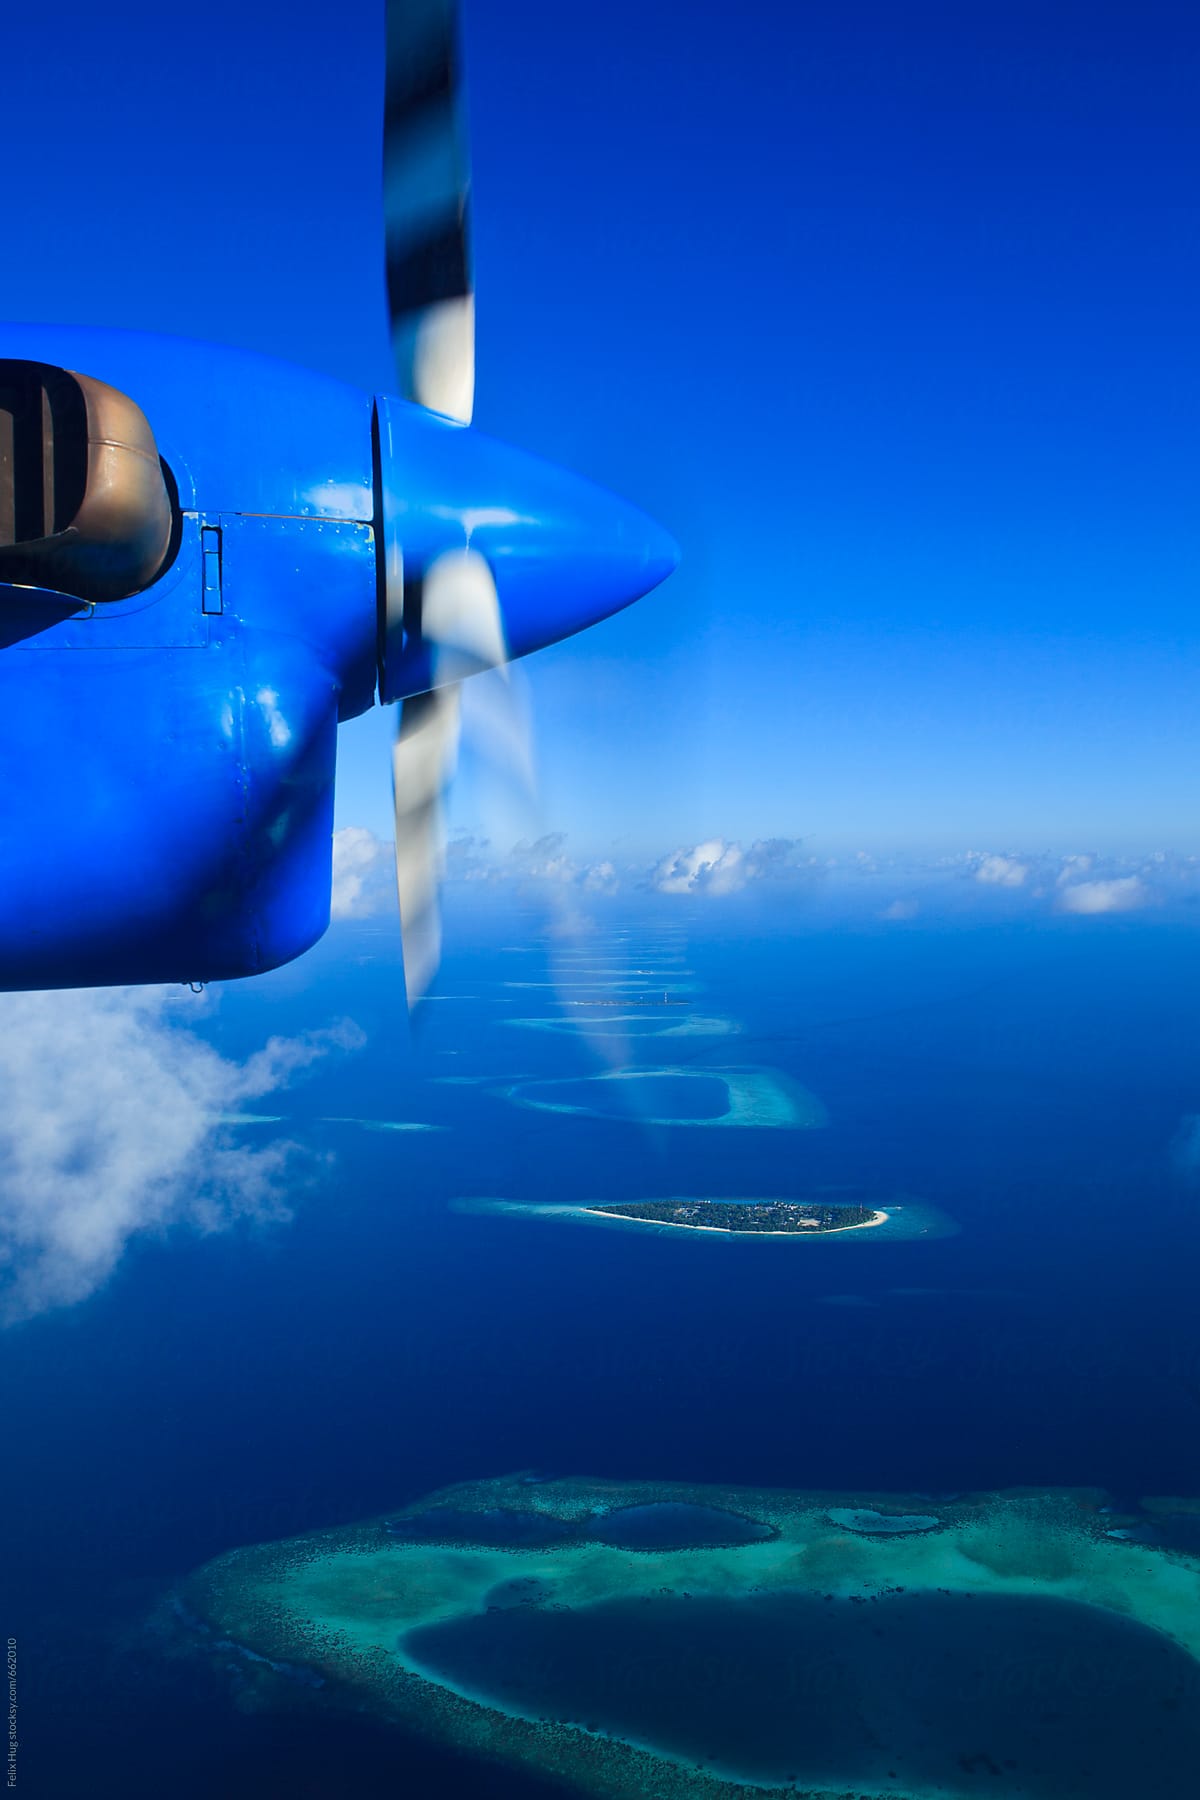 Sea Plane over the Maldives